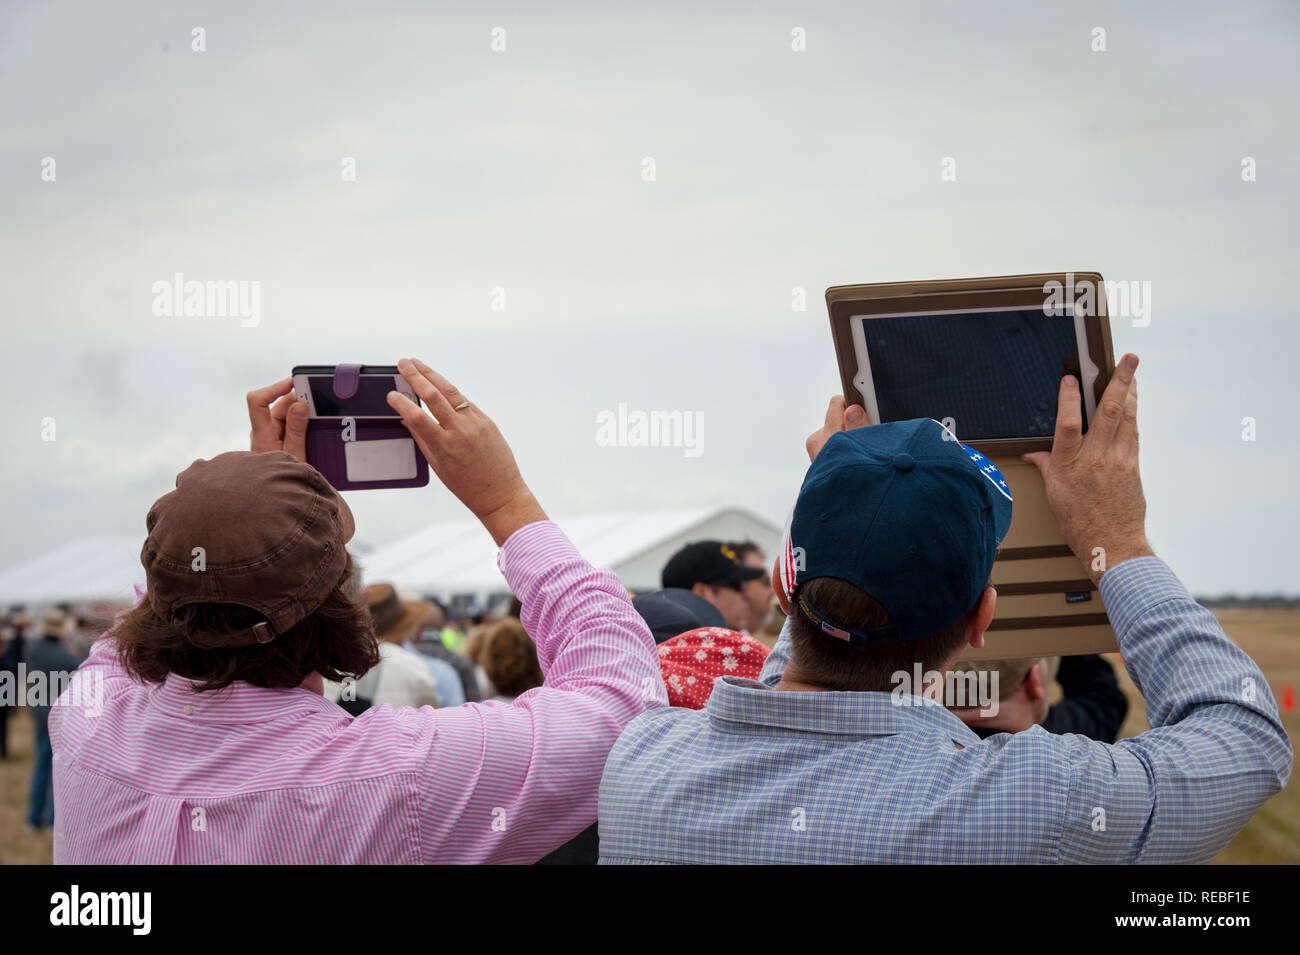 Deux spectateurs airshow à prendre des photos avec leurs appareils Banque D'Images